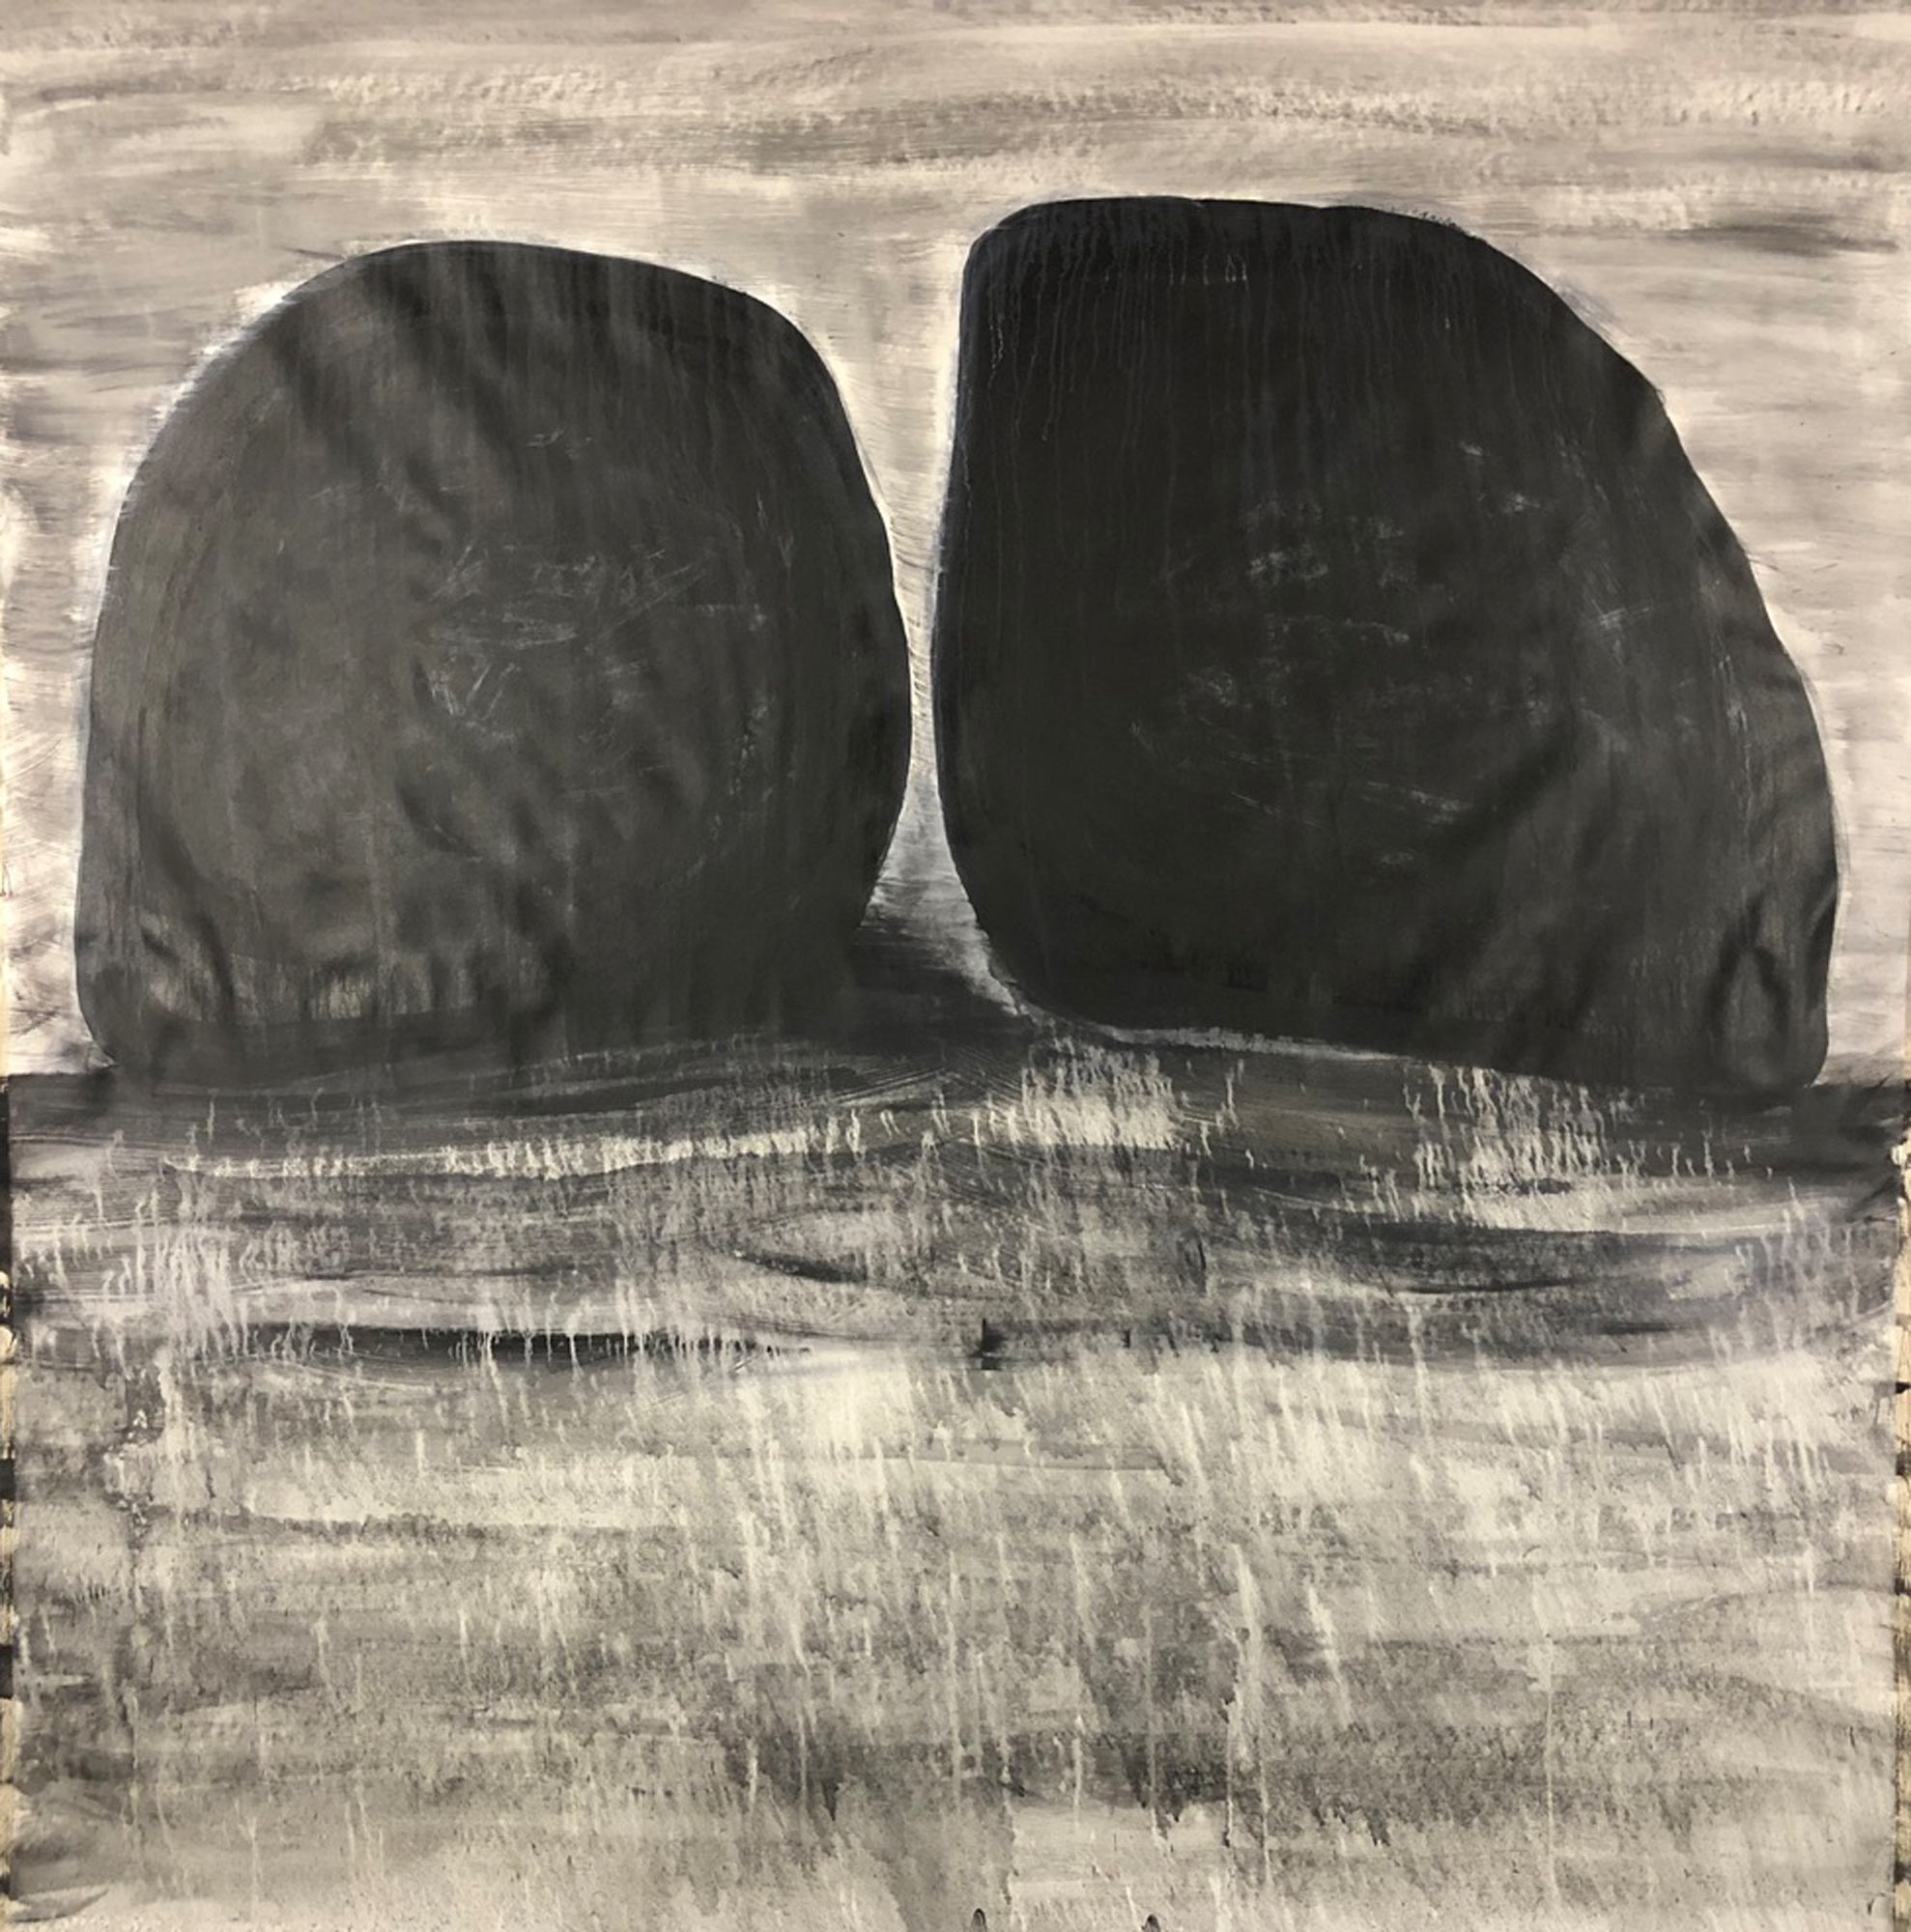 Rocks talk, 2018, acrylic on canvas, 7 x 7 ft, $10,000